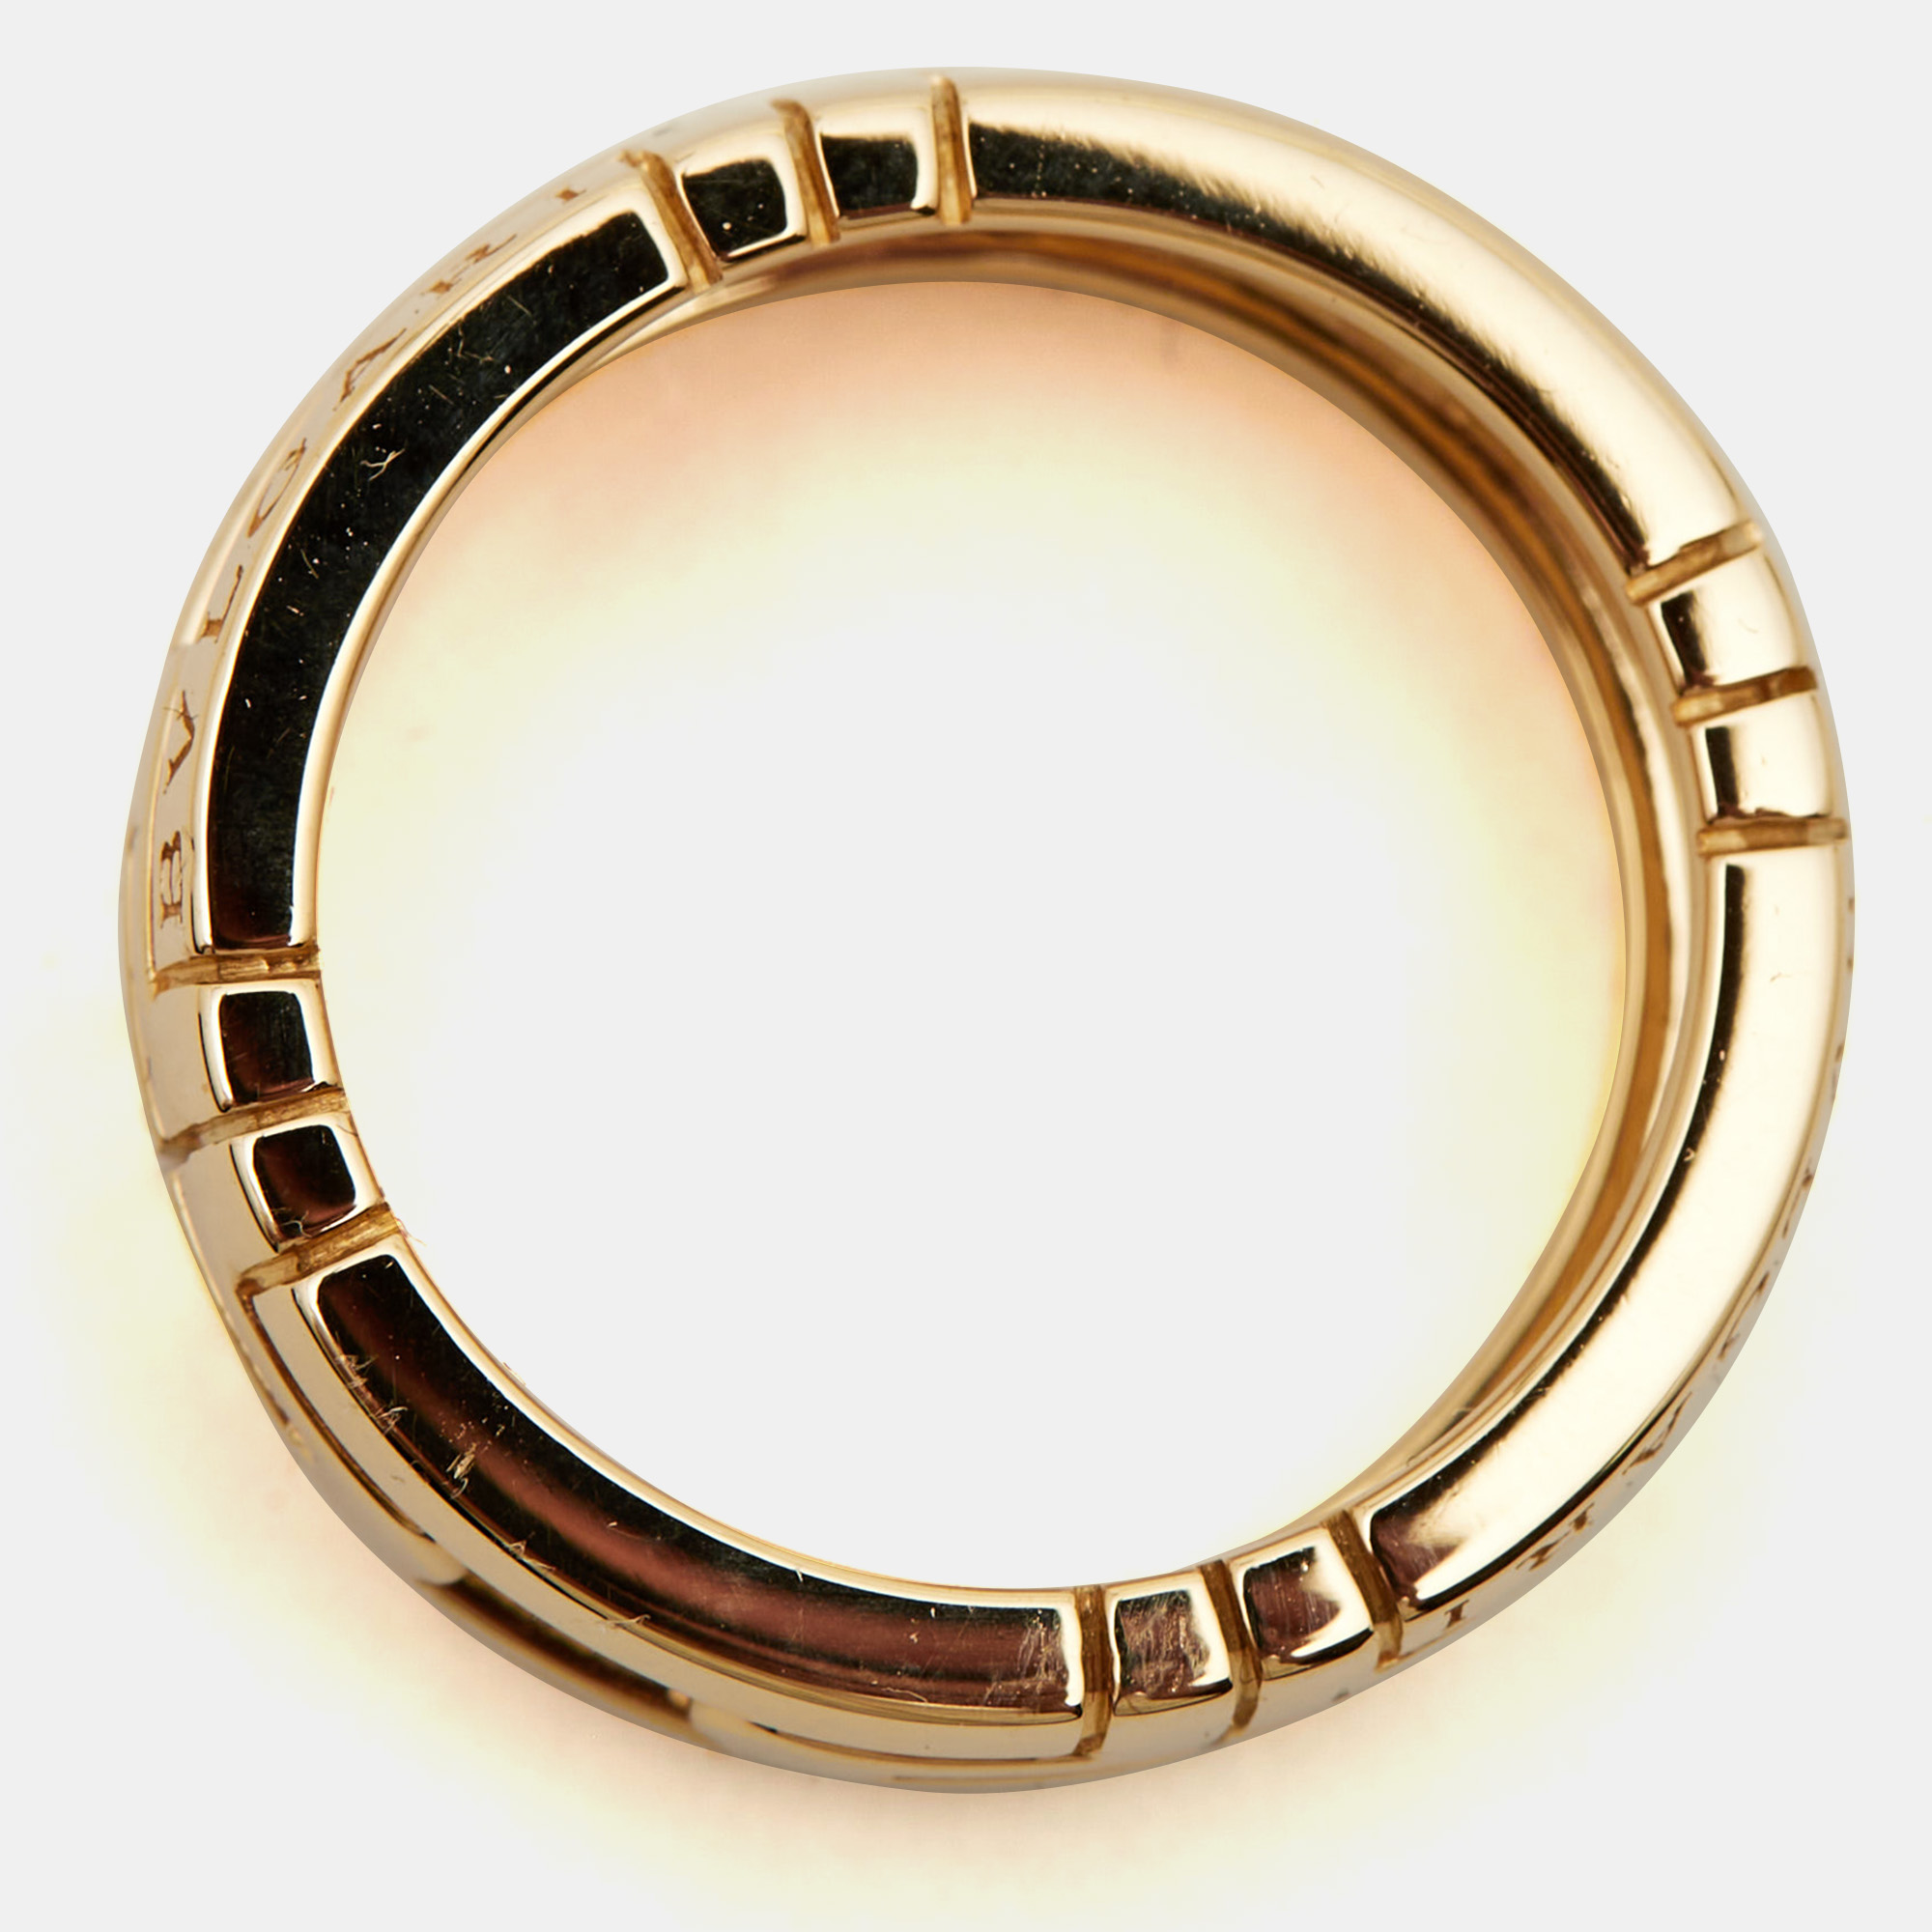 Bvlgari Parentesi 18k Yellow Gold Ring Size 52